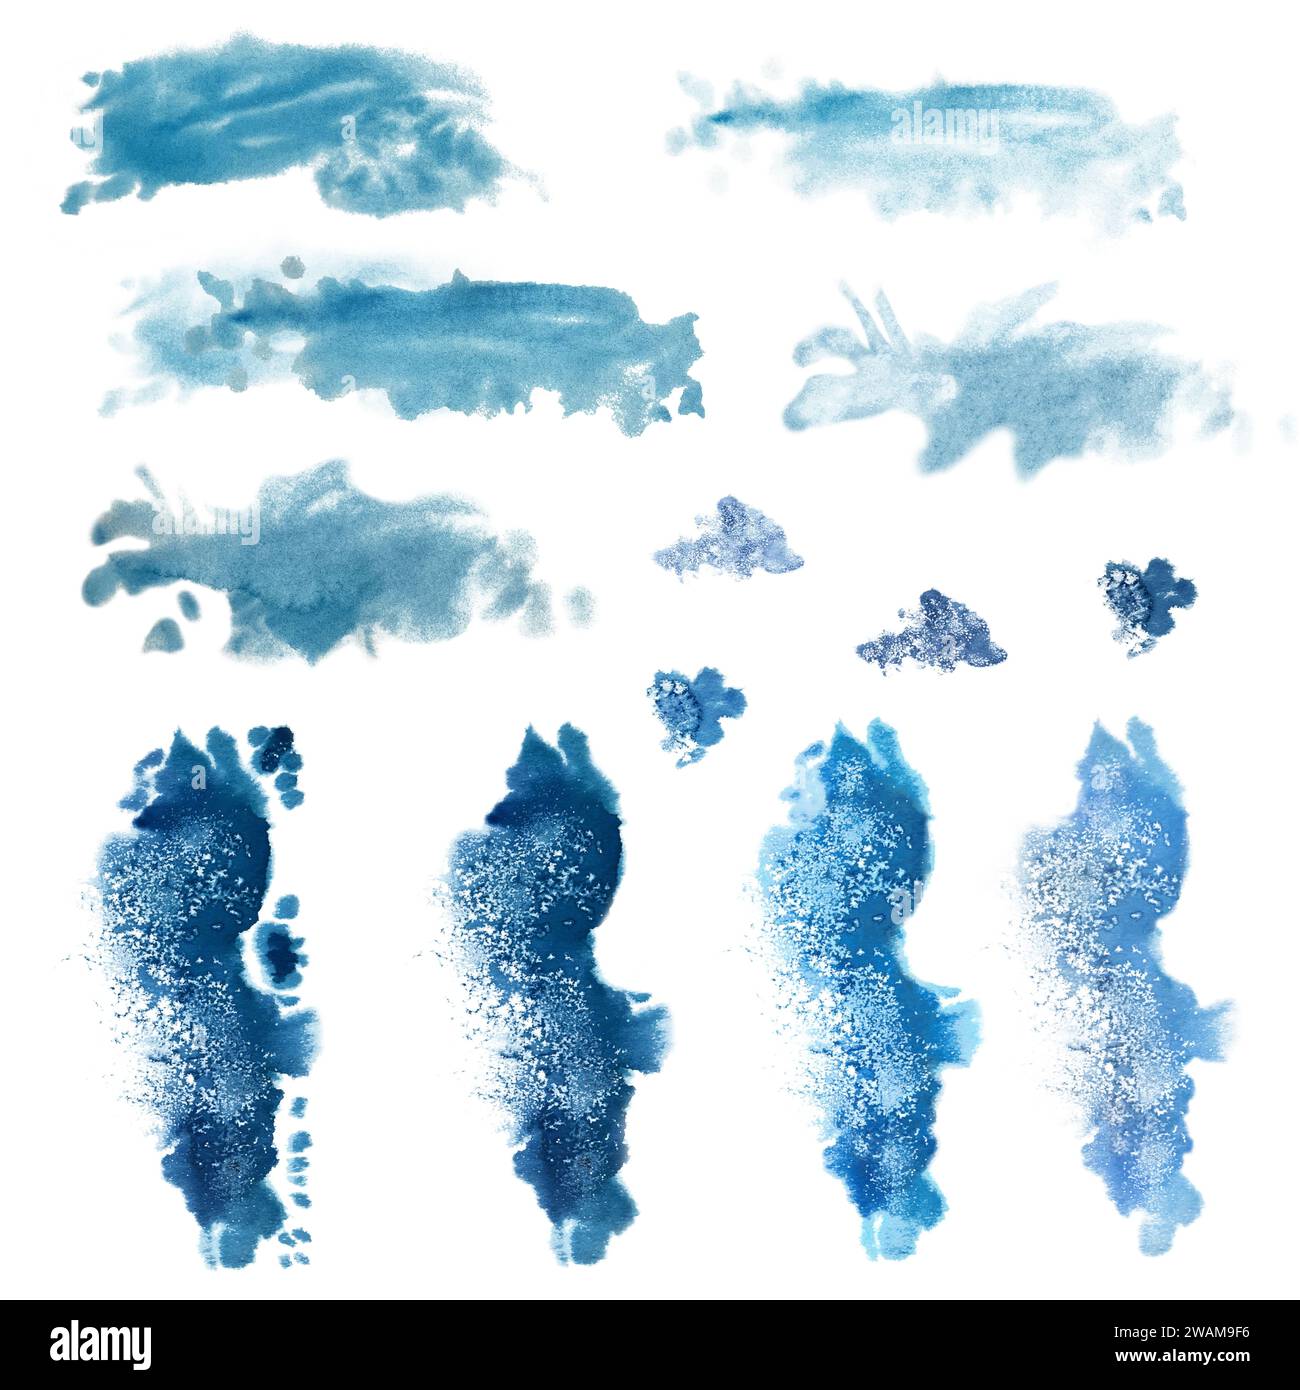 Acuarela manchas azules, salpicaduras para la imagen del mar, olas, cielo, nubes, niebla, fondo, paisajes marinos abstractos con textura. Las ilustraciones son isol Foto de stock